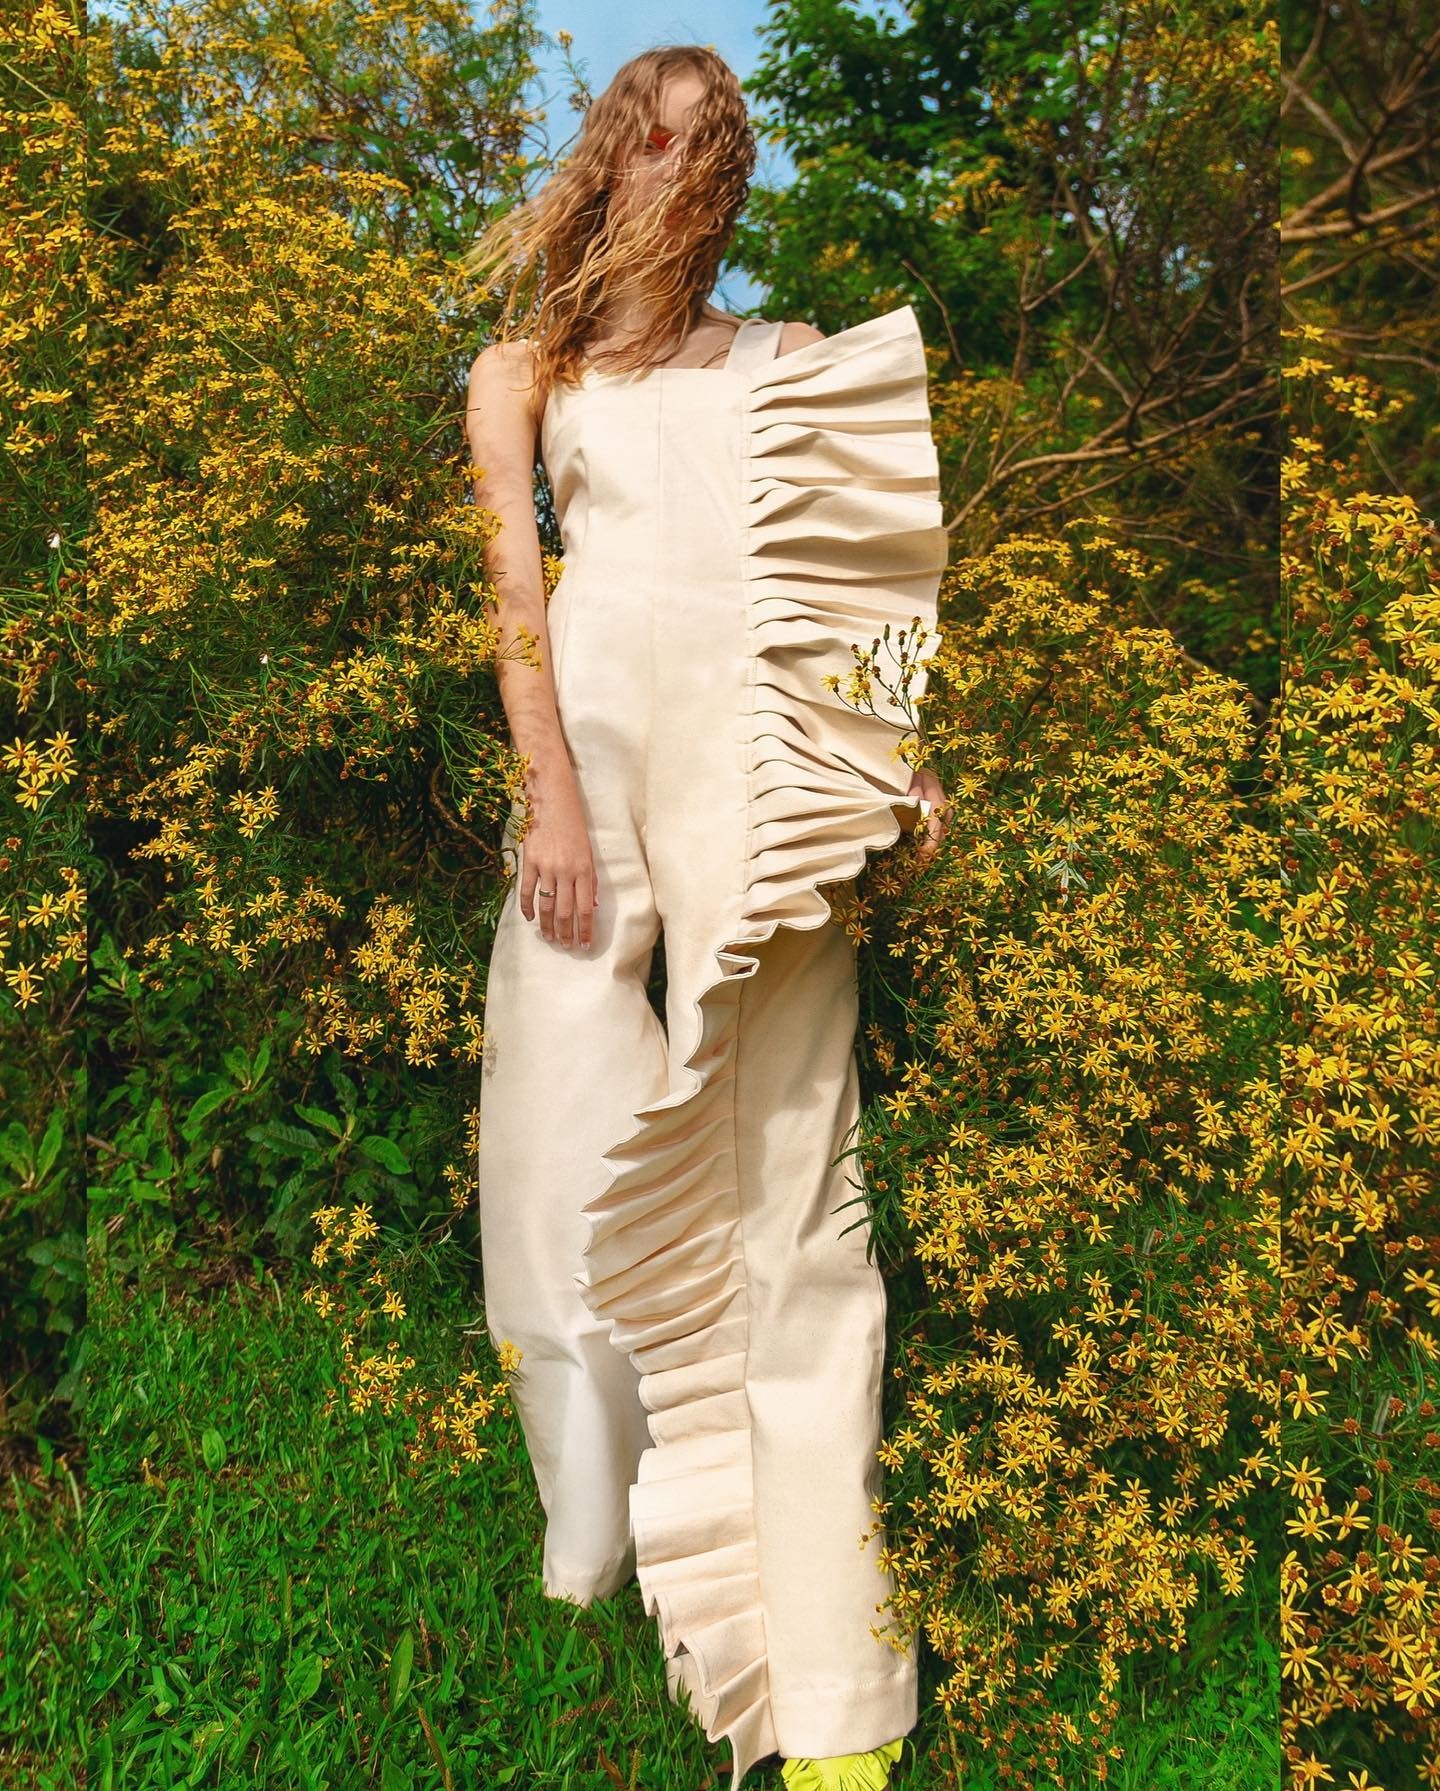 A marca homônima Chaouiche apresenta em suas coleções muitos drapeados, cores efervescentes e versatilidade no uso de tecidos e desenhos de silhuetas (Foto: Reprodução @chaouiche)